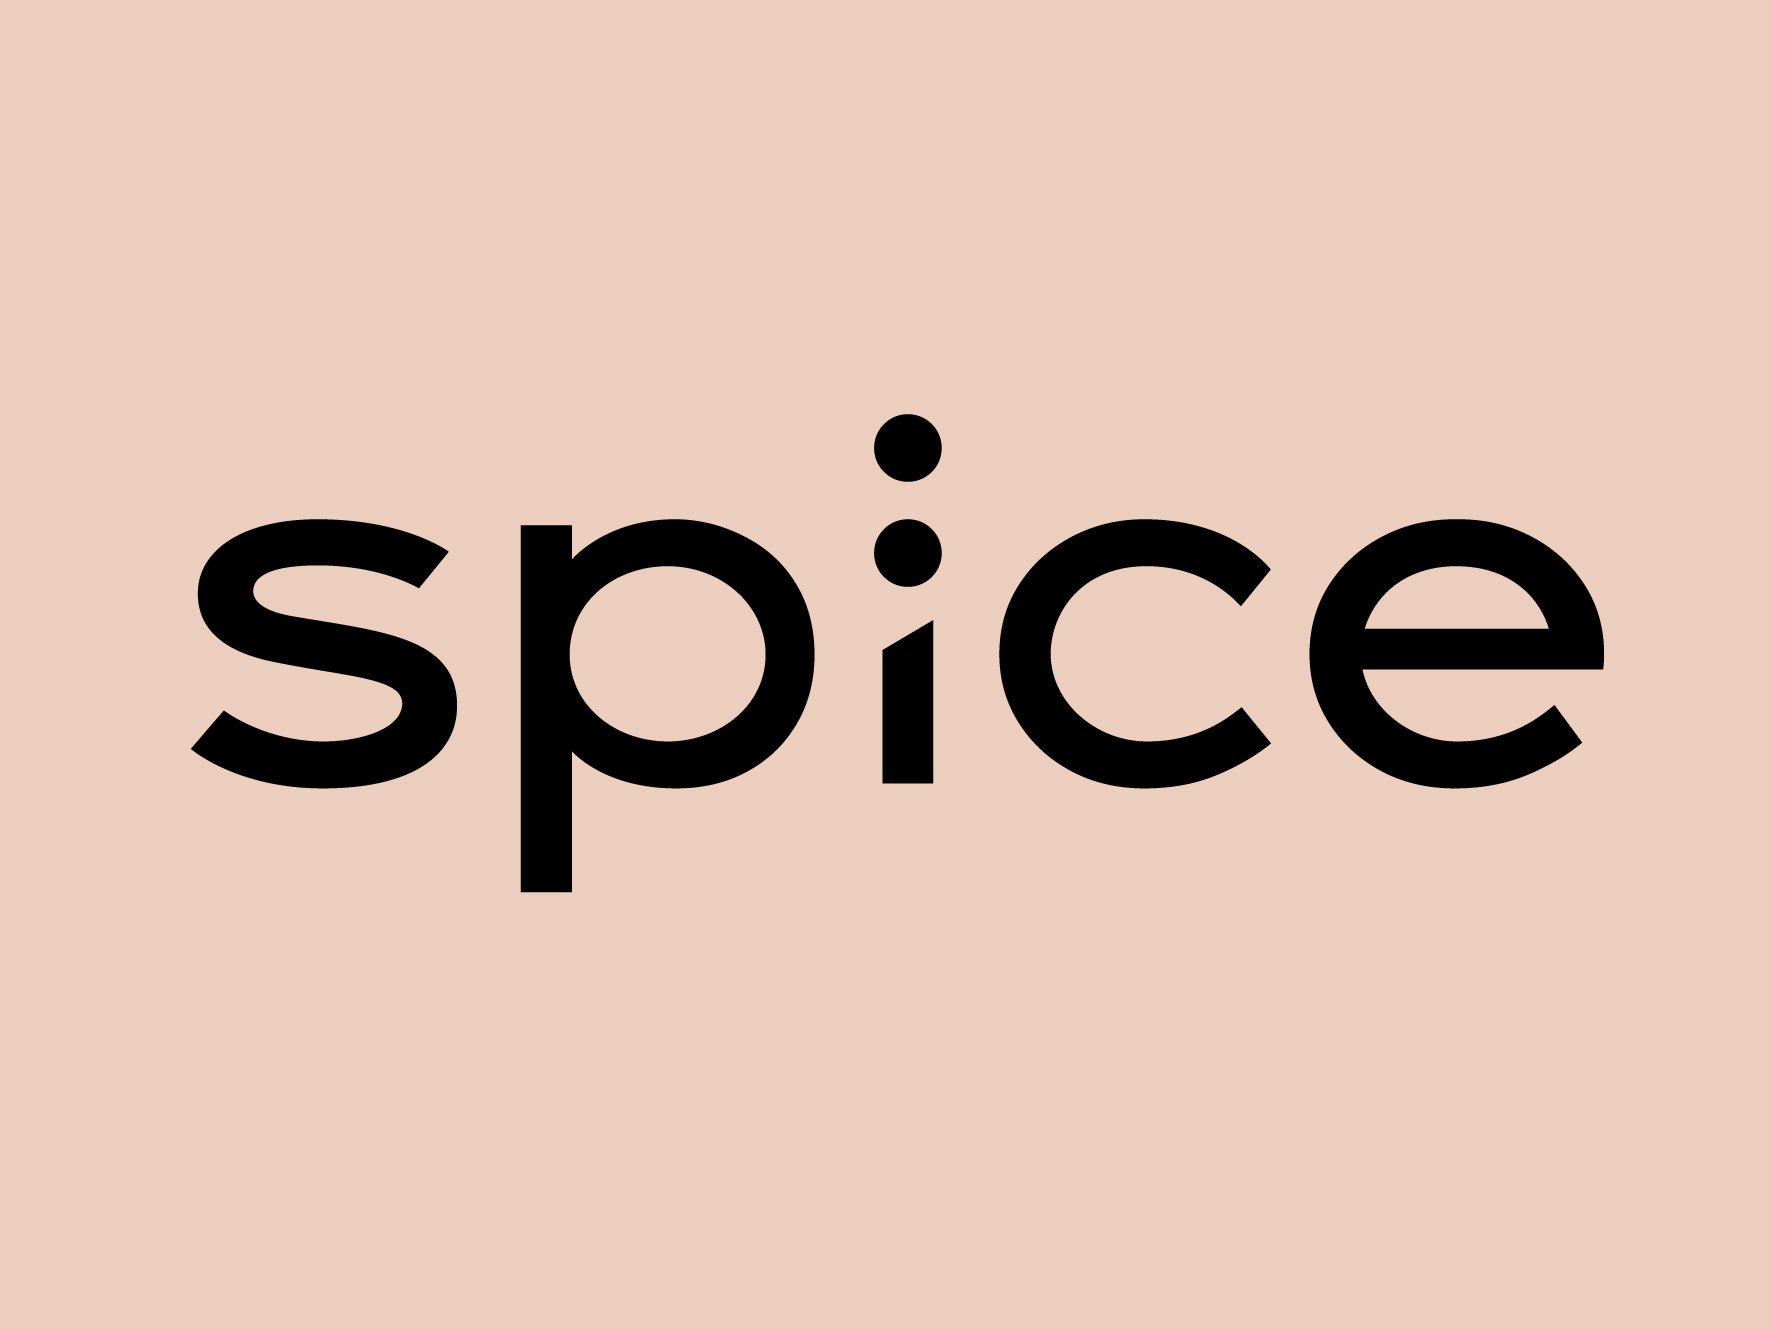 Tirdzniecības centrs “Spice” paplašina tā tehnoloģisko segmentu